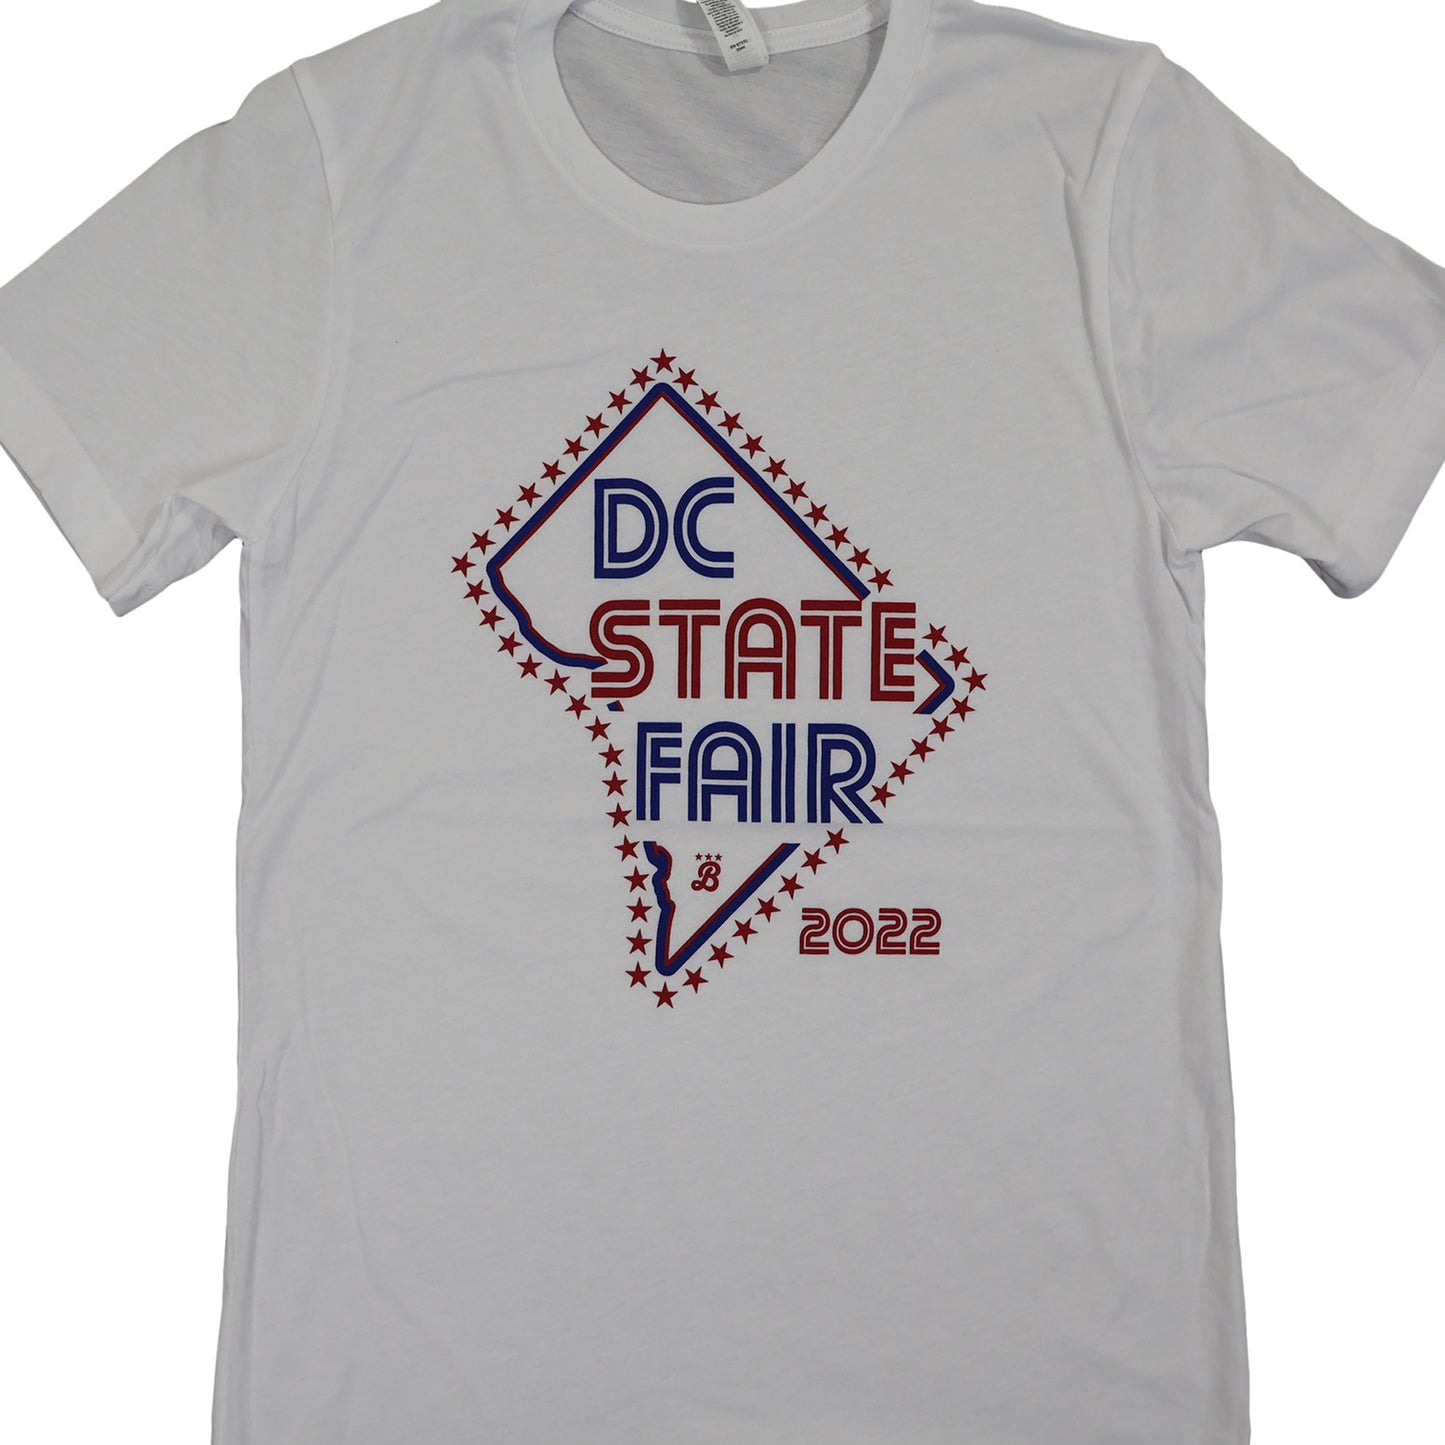 DC State Fair - 2022 Fair T-shirt (51 Stars)